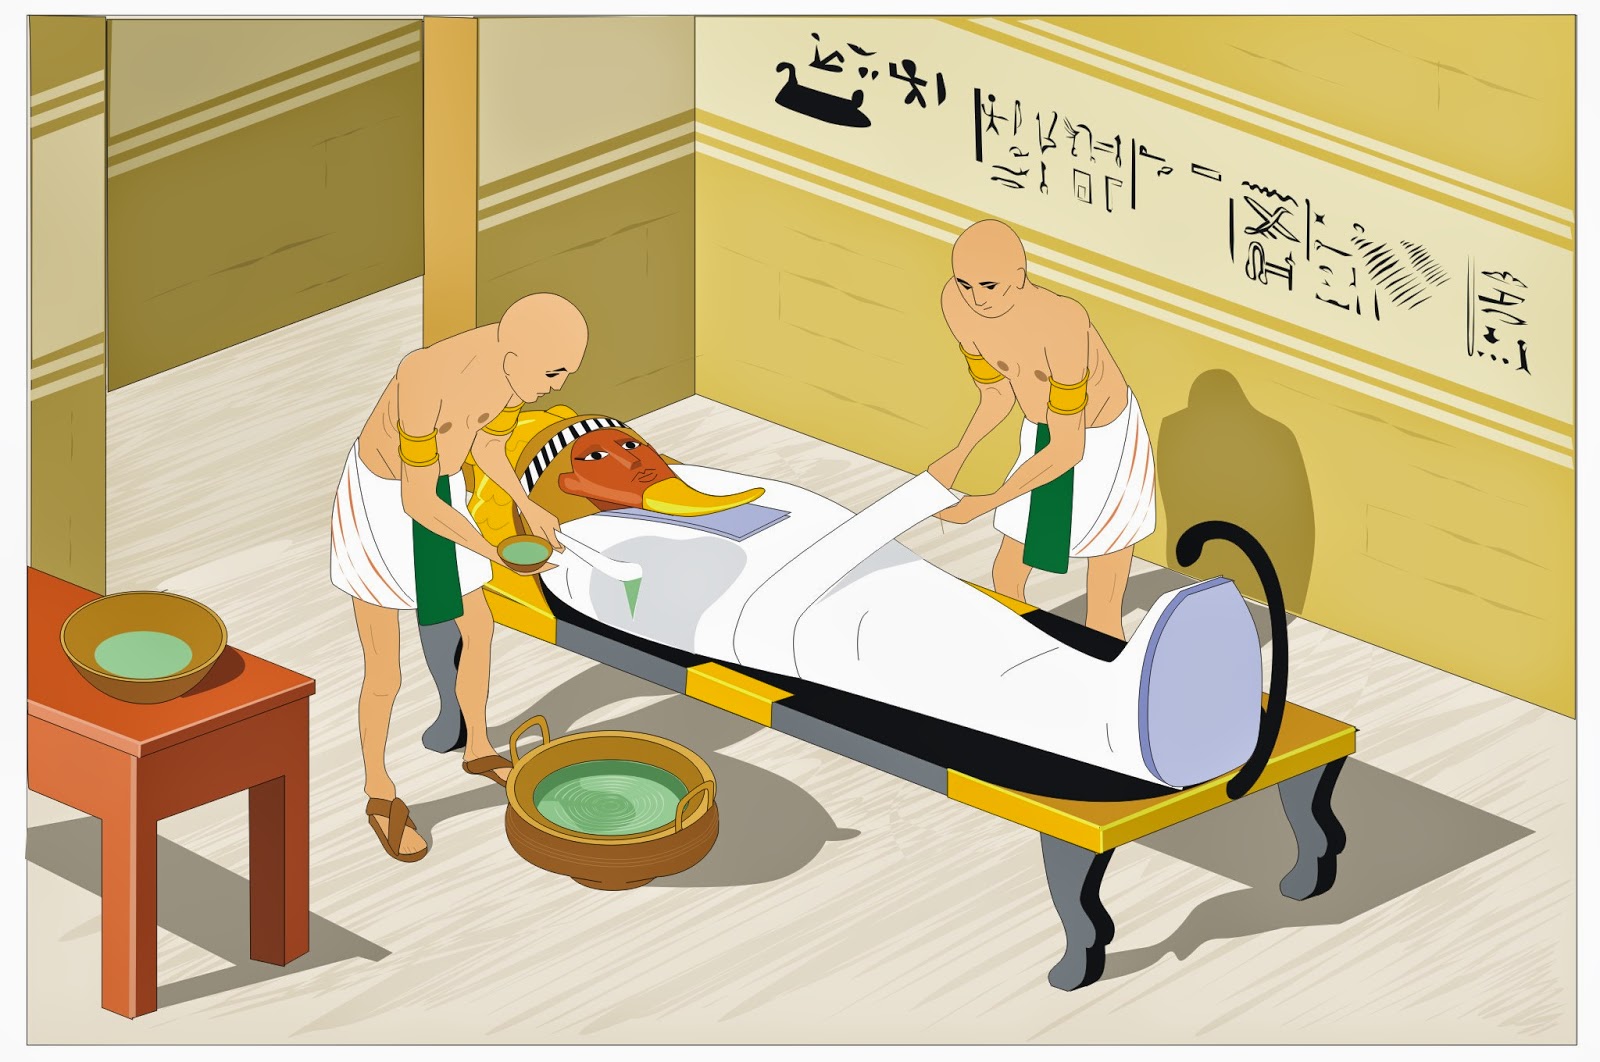 Ilustración de Ilustración De Egipto Niño De Historieta y más